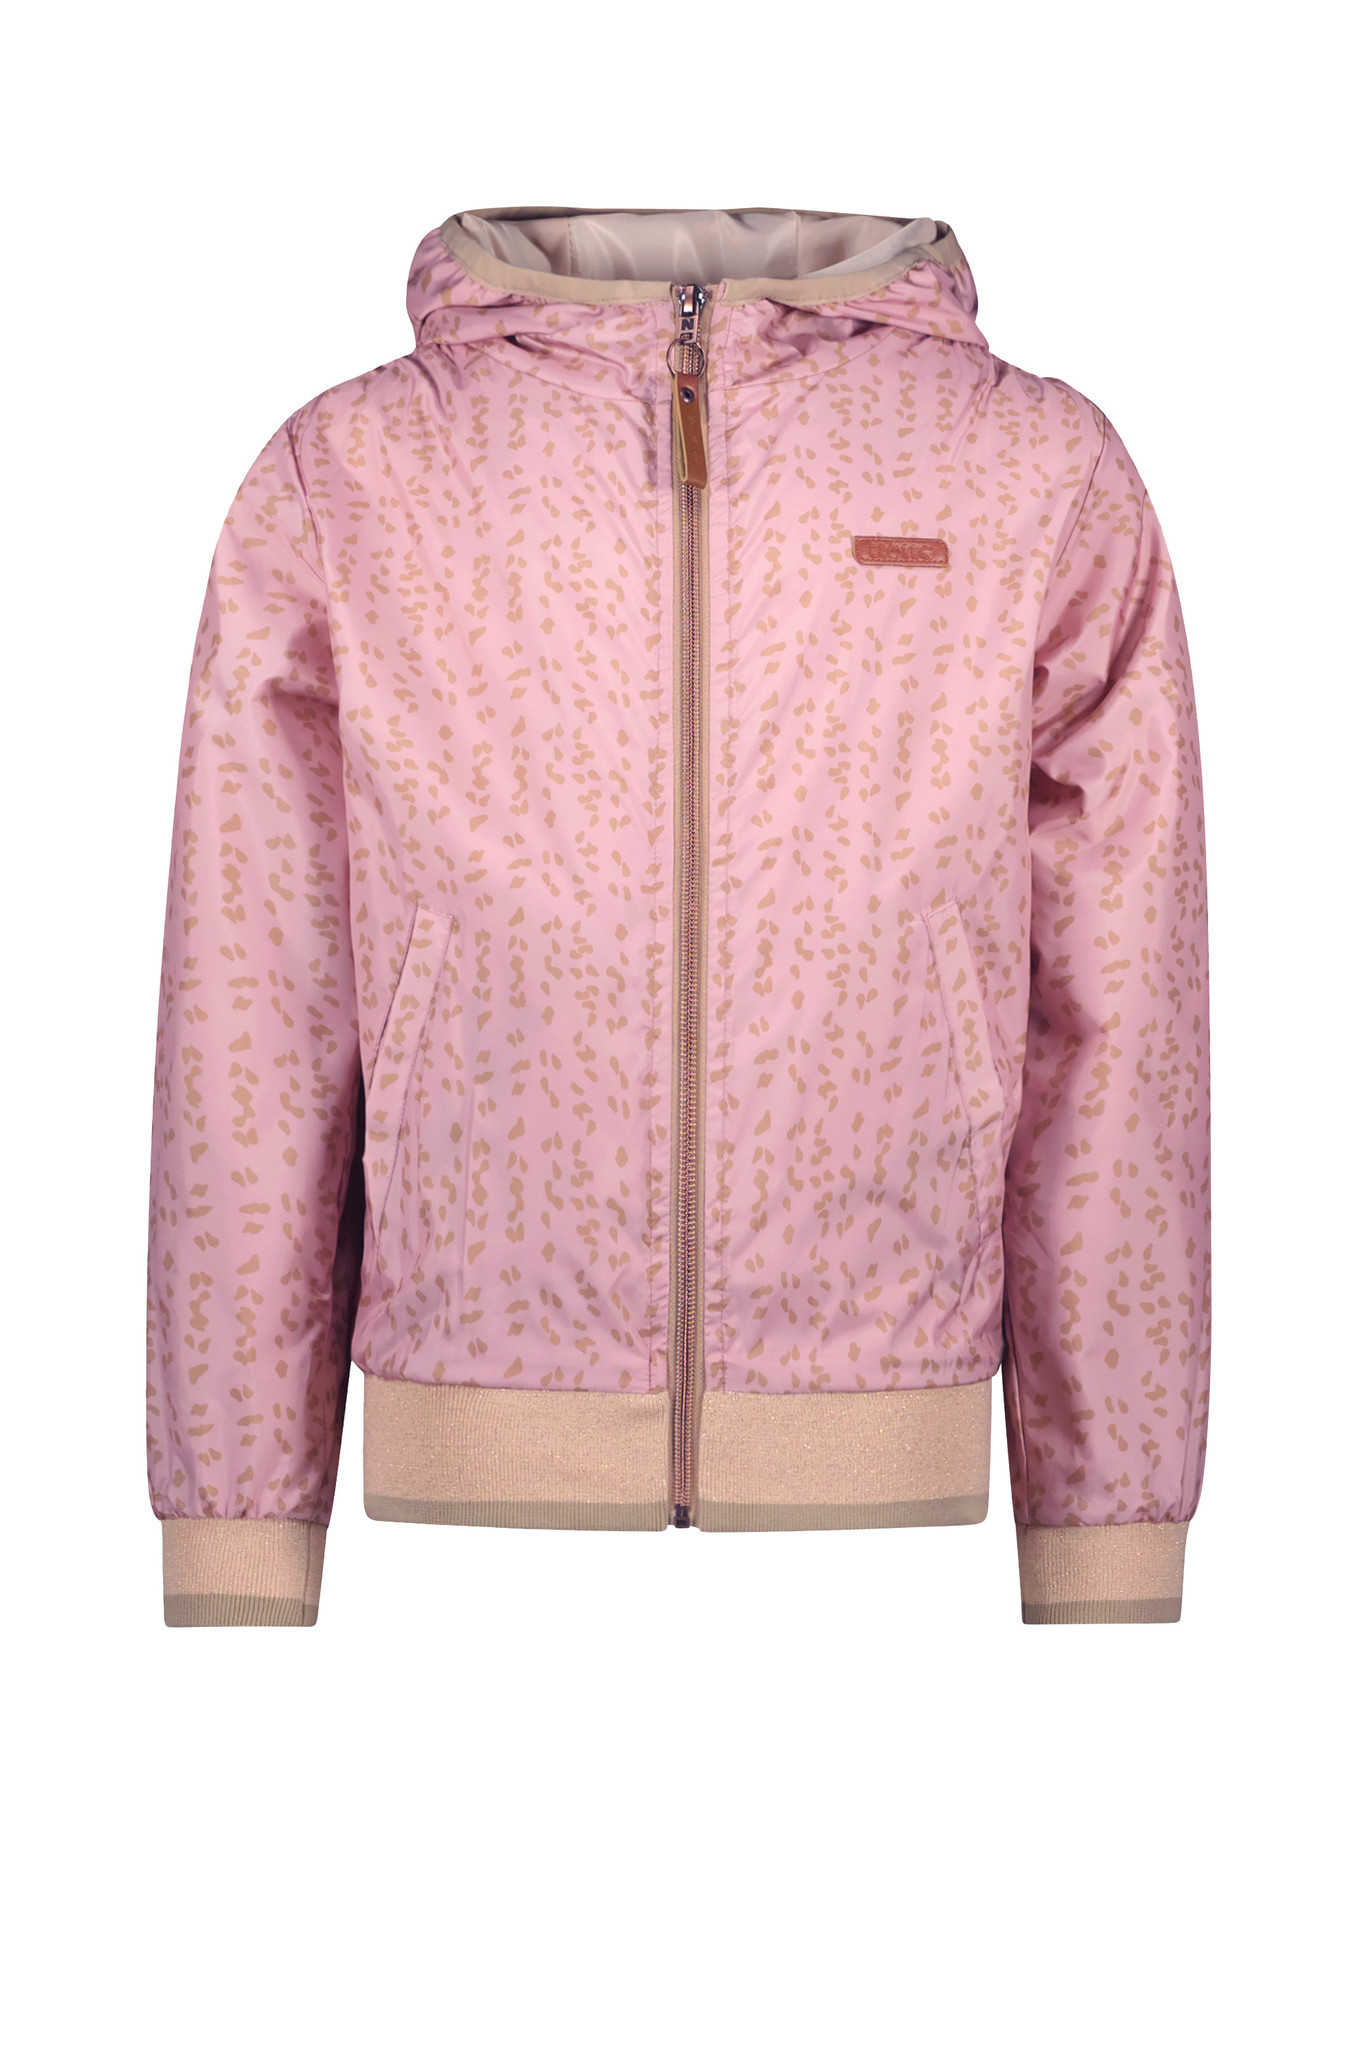 Voor een dagje uit belofte gips NoNo - Meisjes zomerjas met capuchon - Becky - Vintage roze -  merkmeisjeskleding.nl